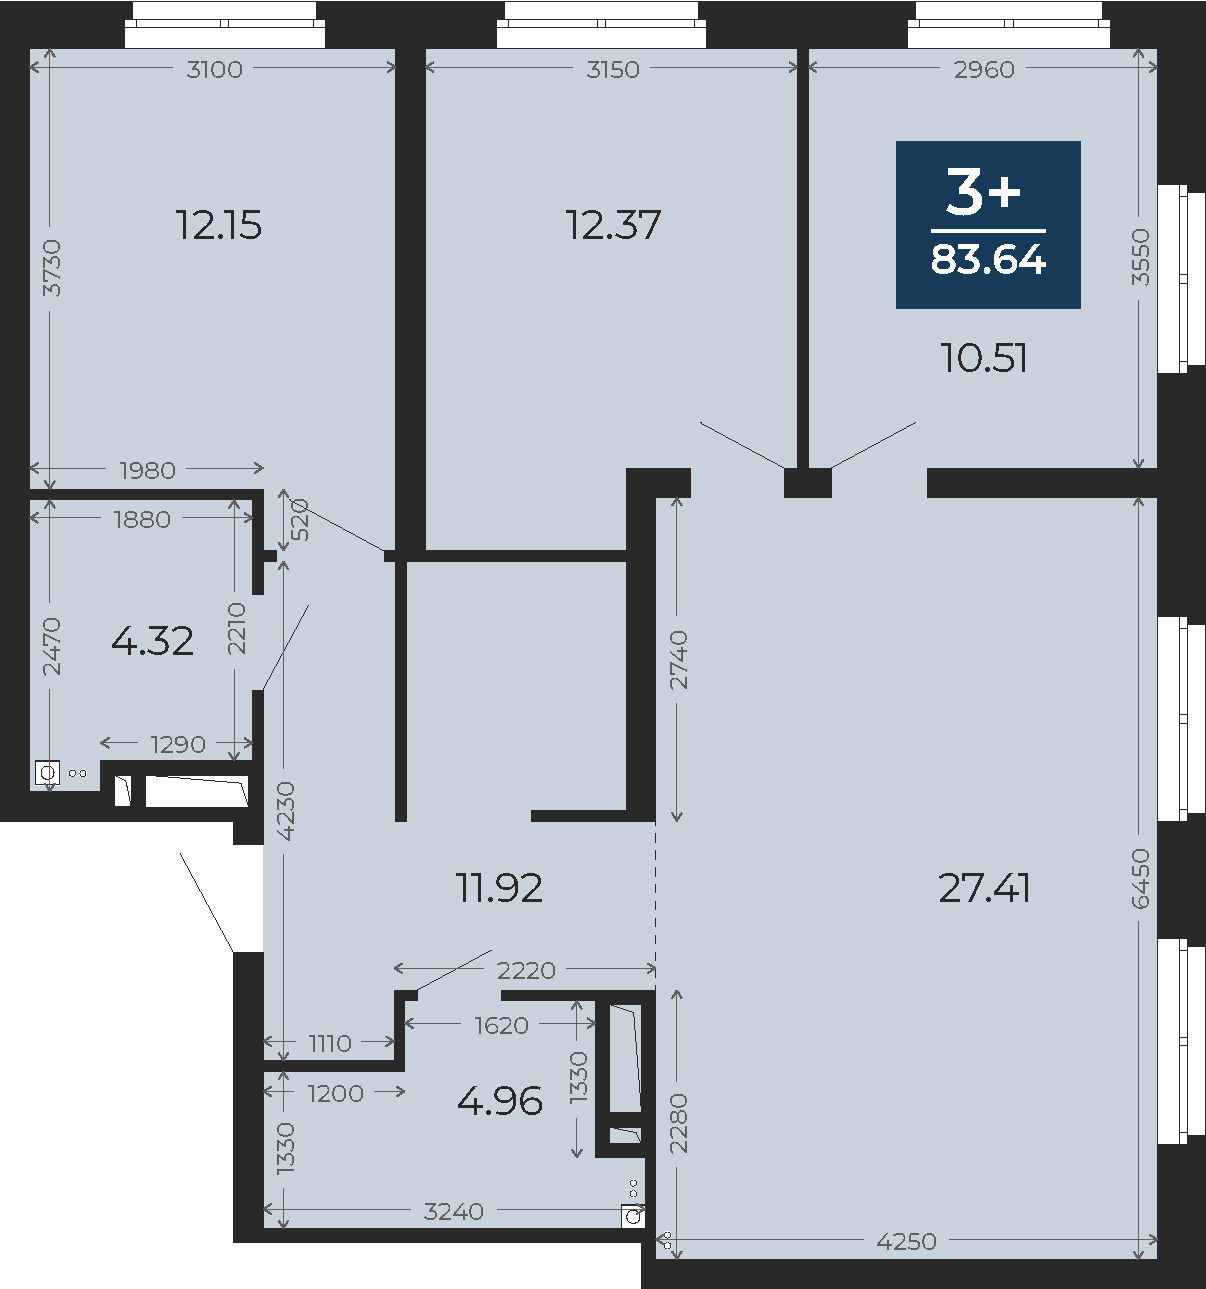 Квартира № 273, 3-комнатная, 83.64 кв. м, 21 этаж